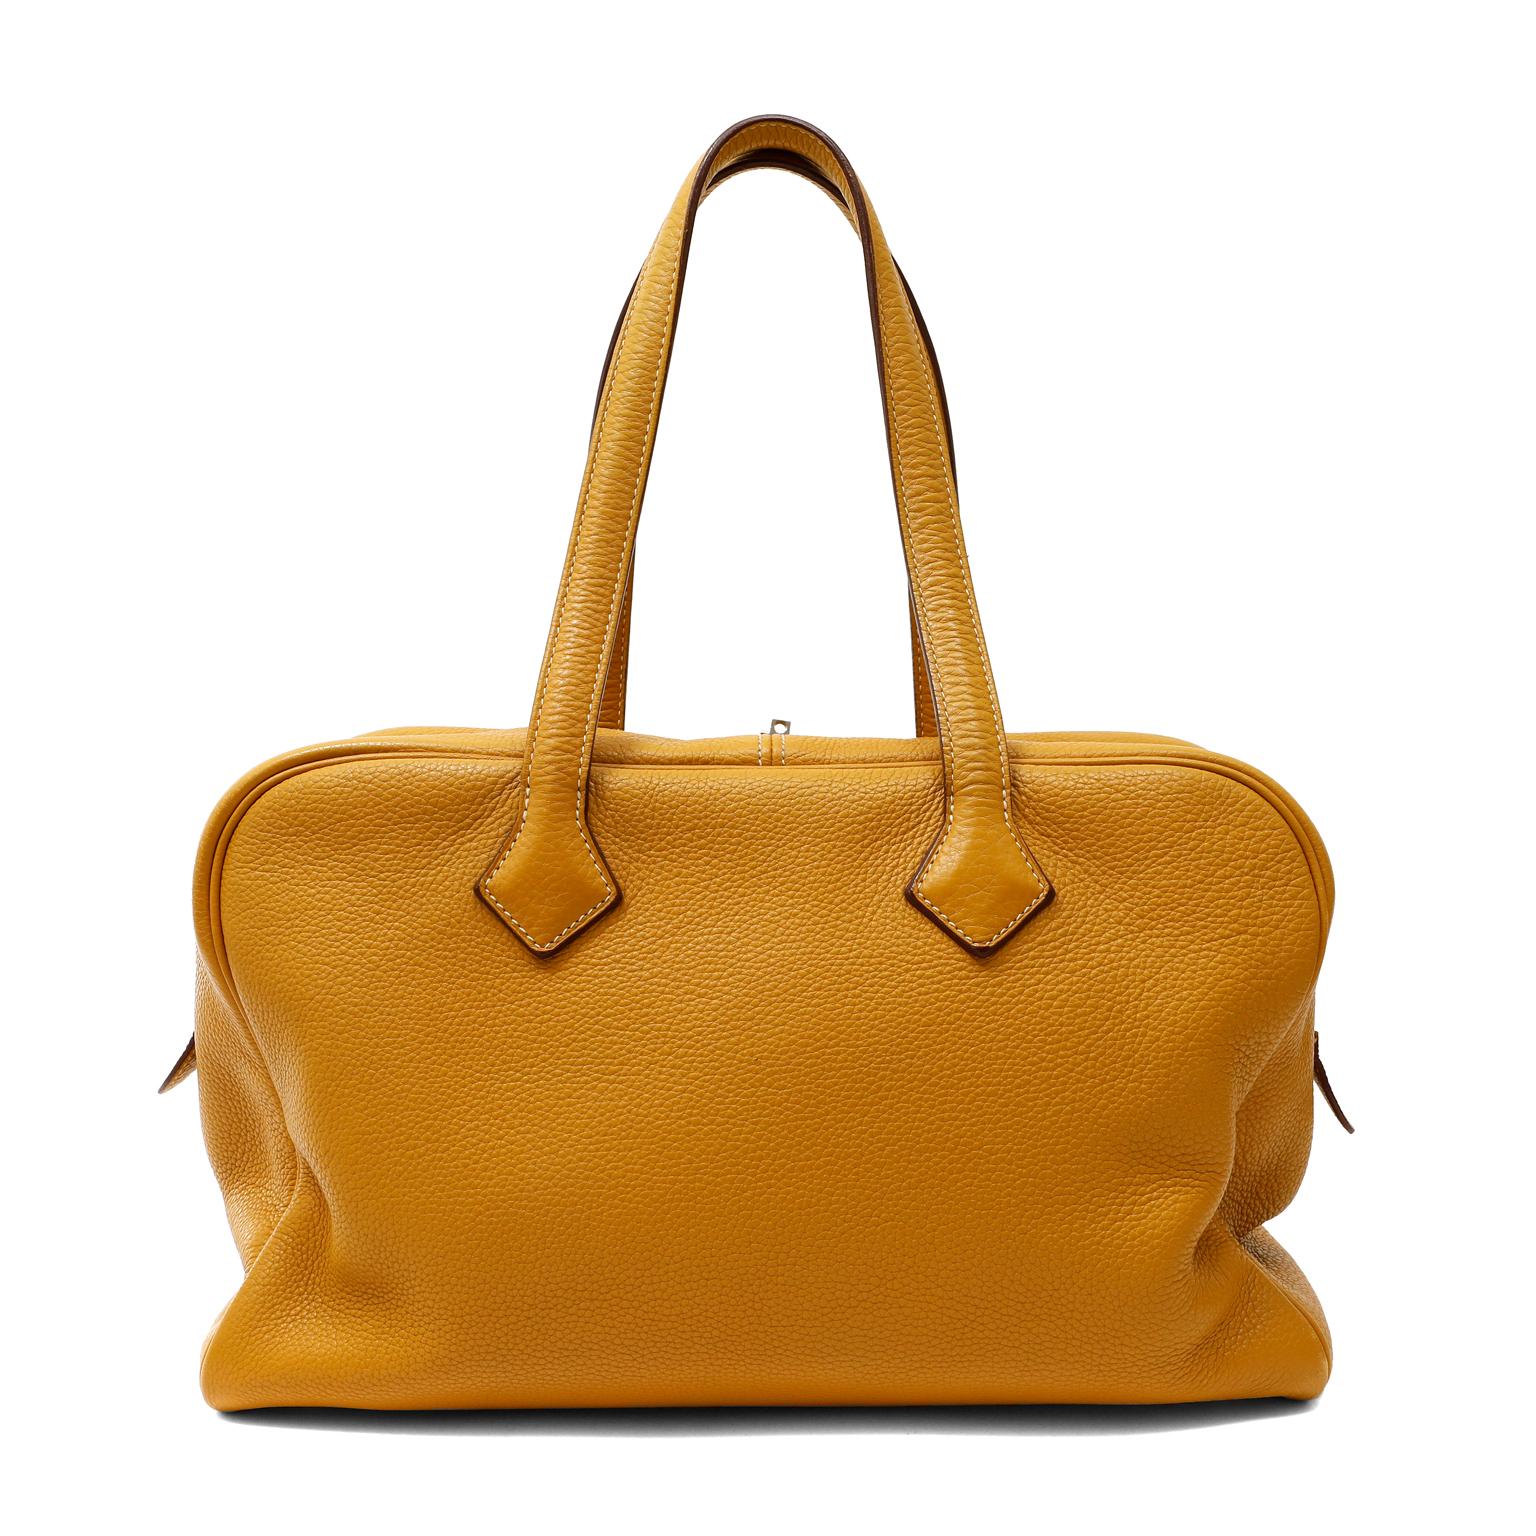 Diese authentische Hermès Mustard Clemence 35 cm Victoria II Tasche ist in ausgezeichnetem Zustand.  Die entspannte Silhouette ist geräumig und liegt aus strukturiertem, senfgelbem Clemence-Leder weich in der Hand.  Ein doppelter